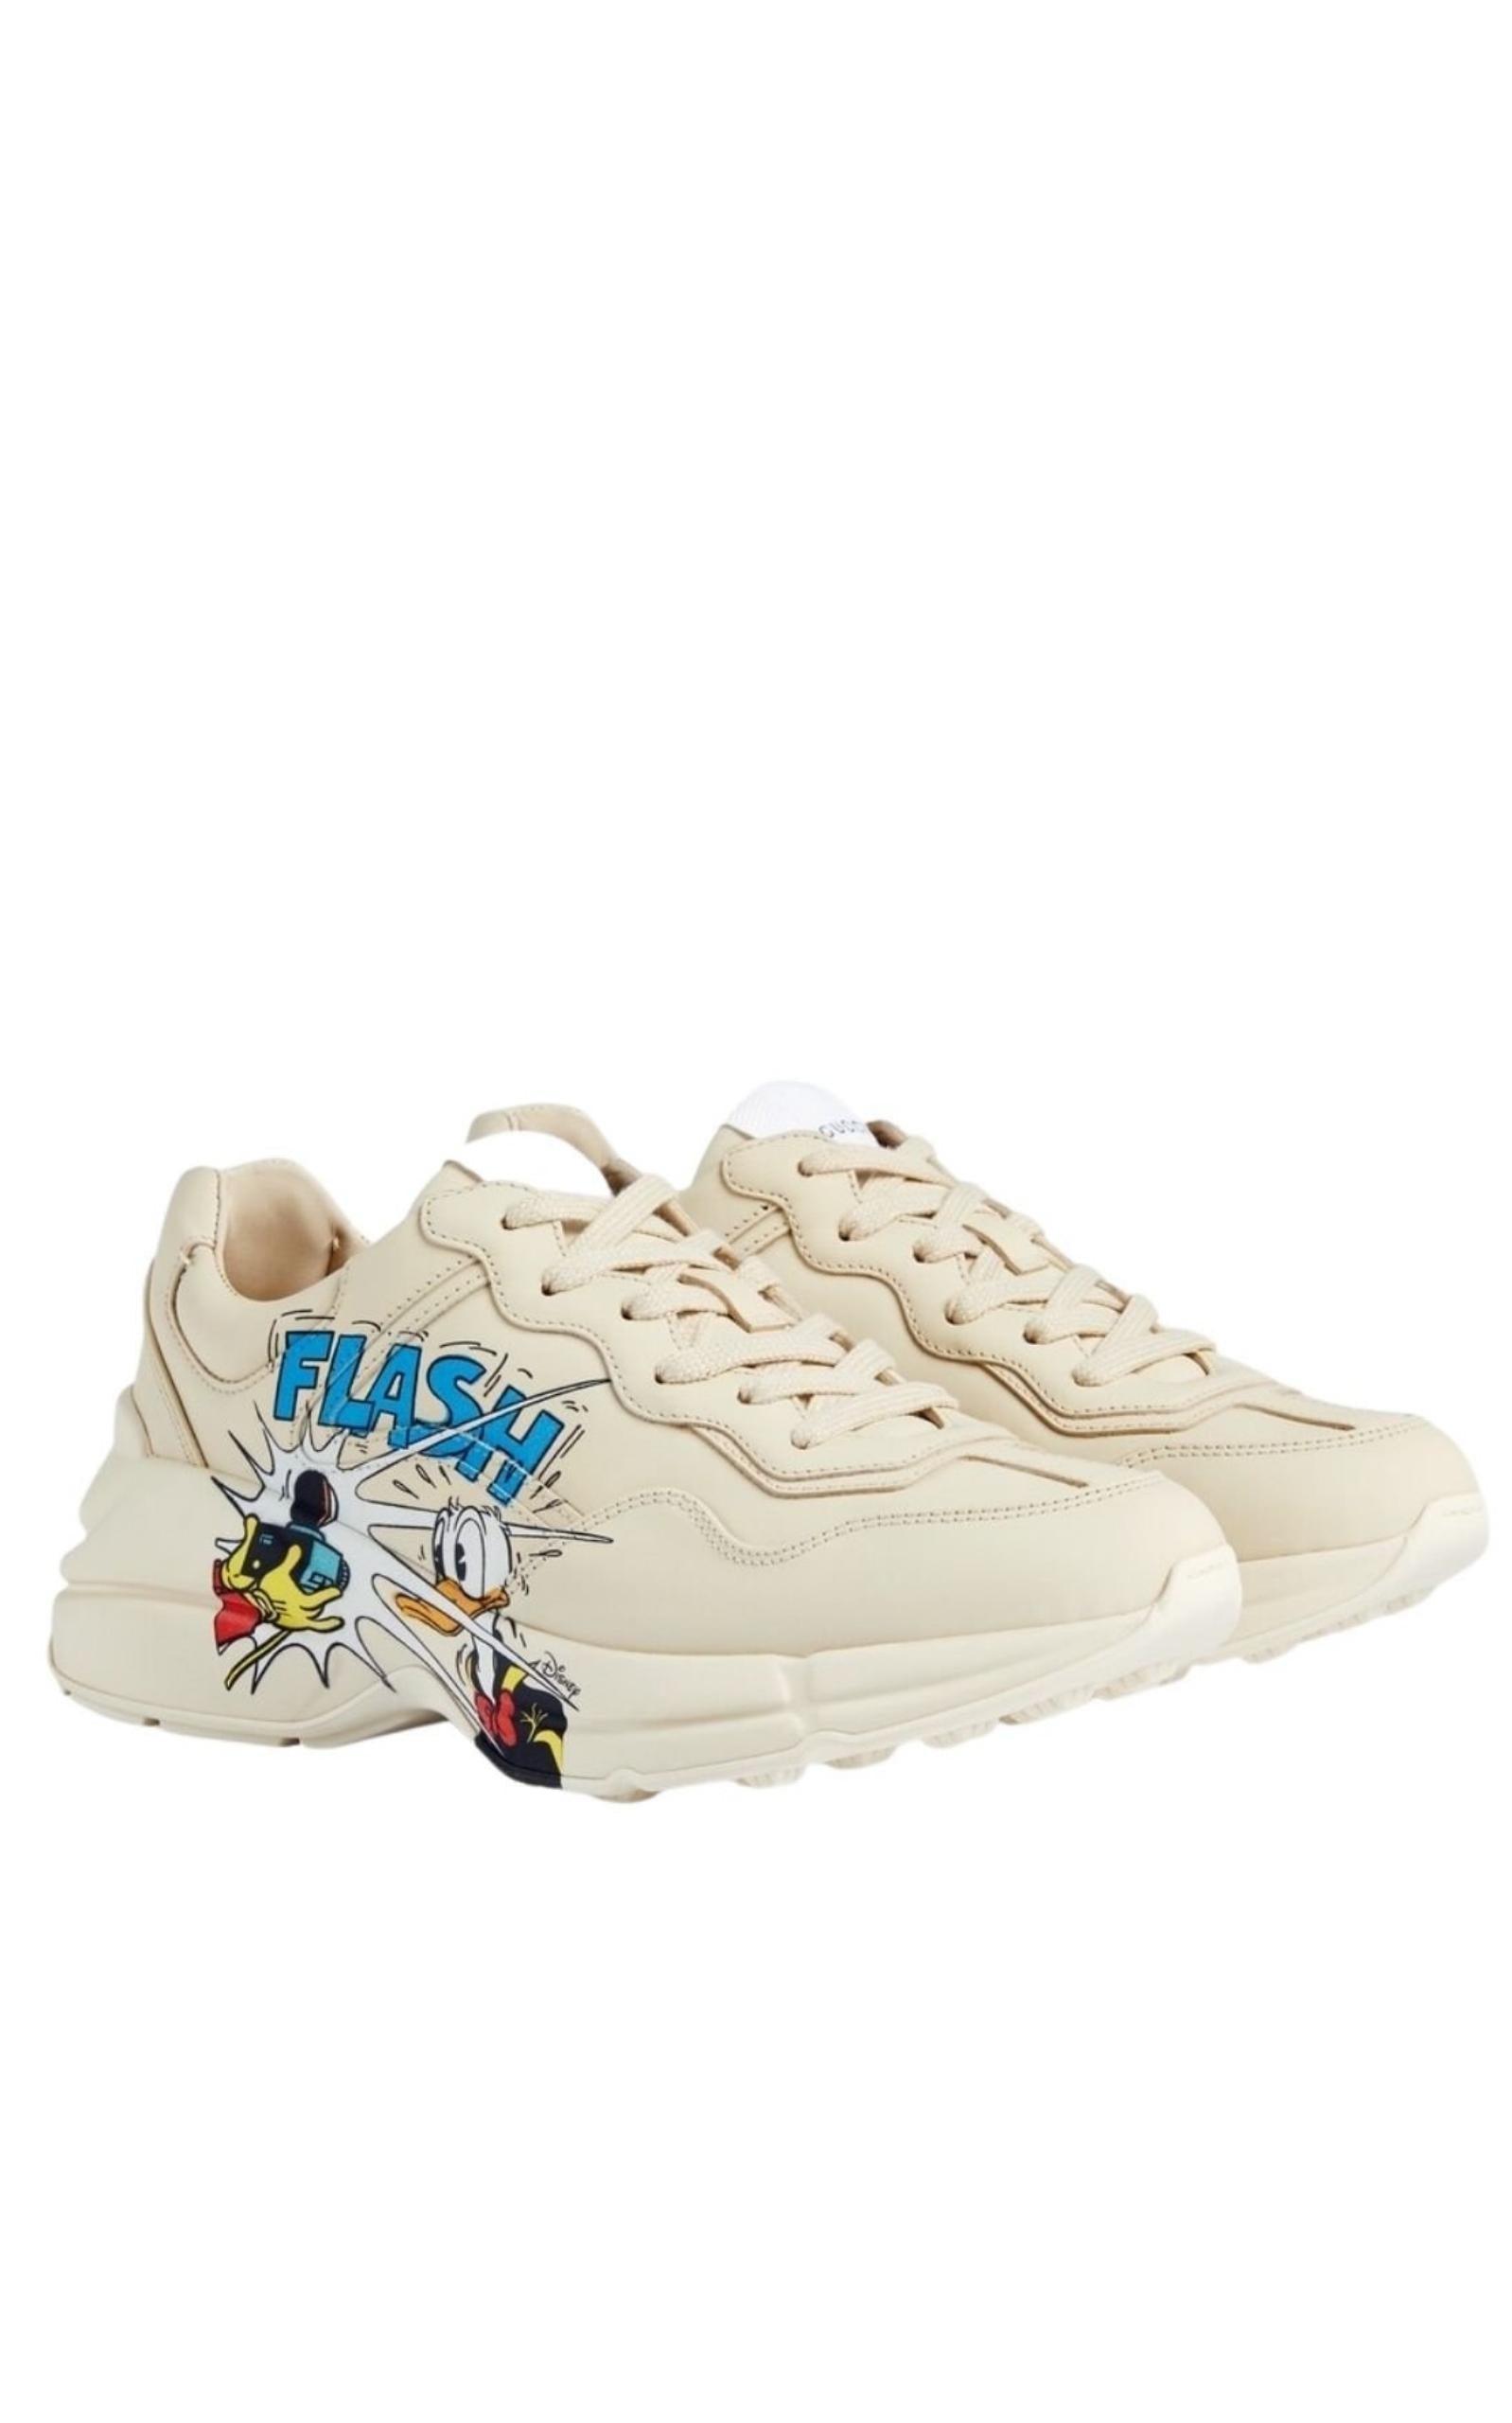 Gucci x Disney Donald Duck Flash Cartoon Design Gucci Shoes / Sneakers Mens